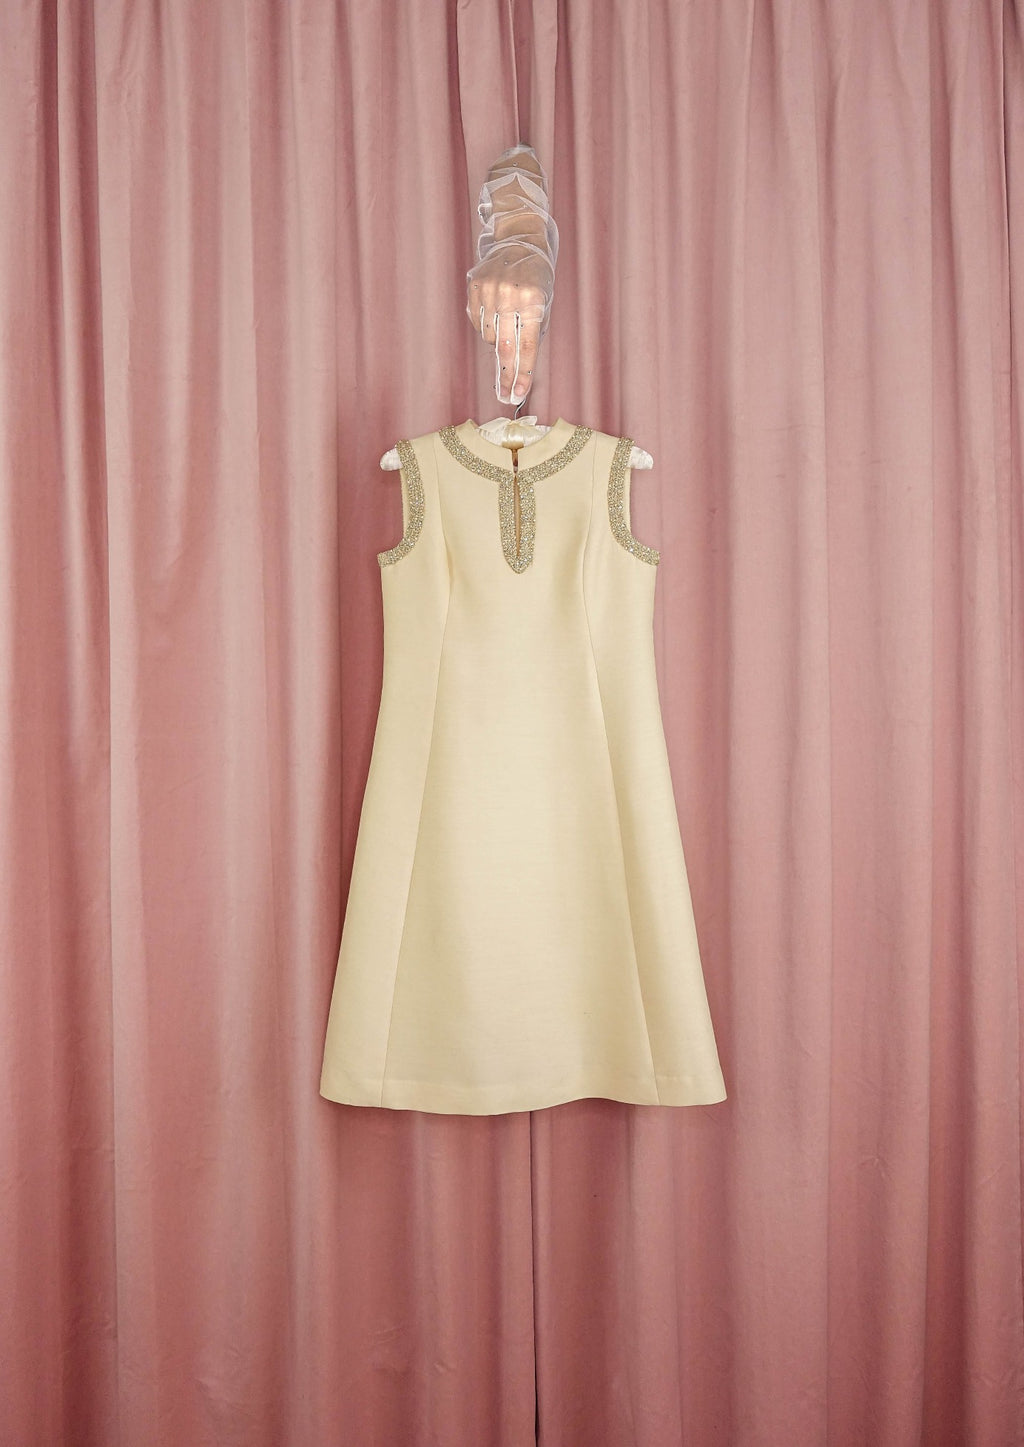 1960s Ivory A-line Dress With Braided Keyhole